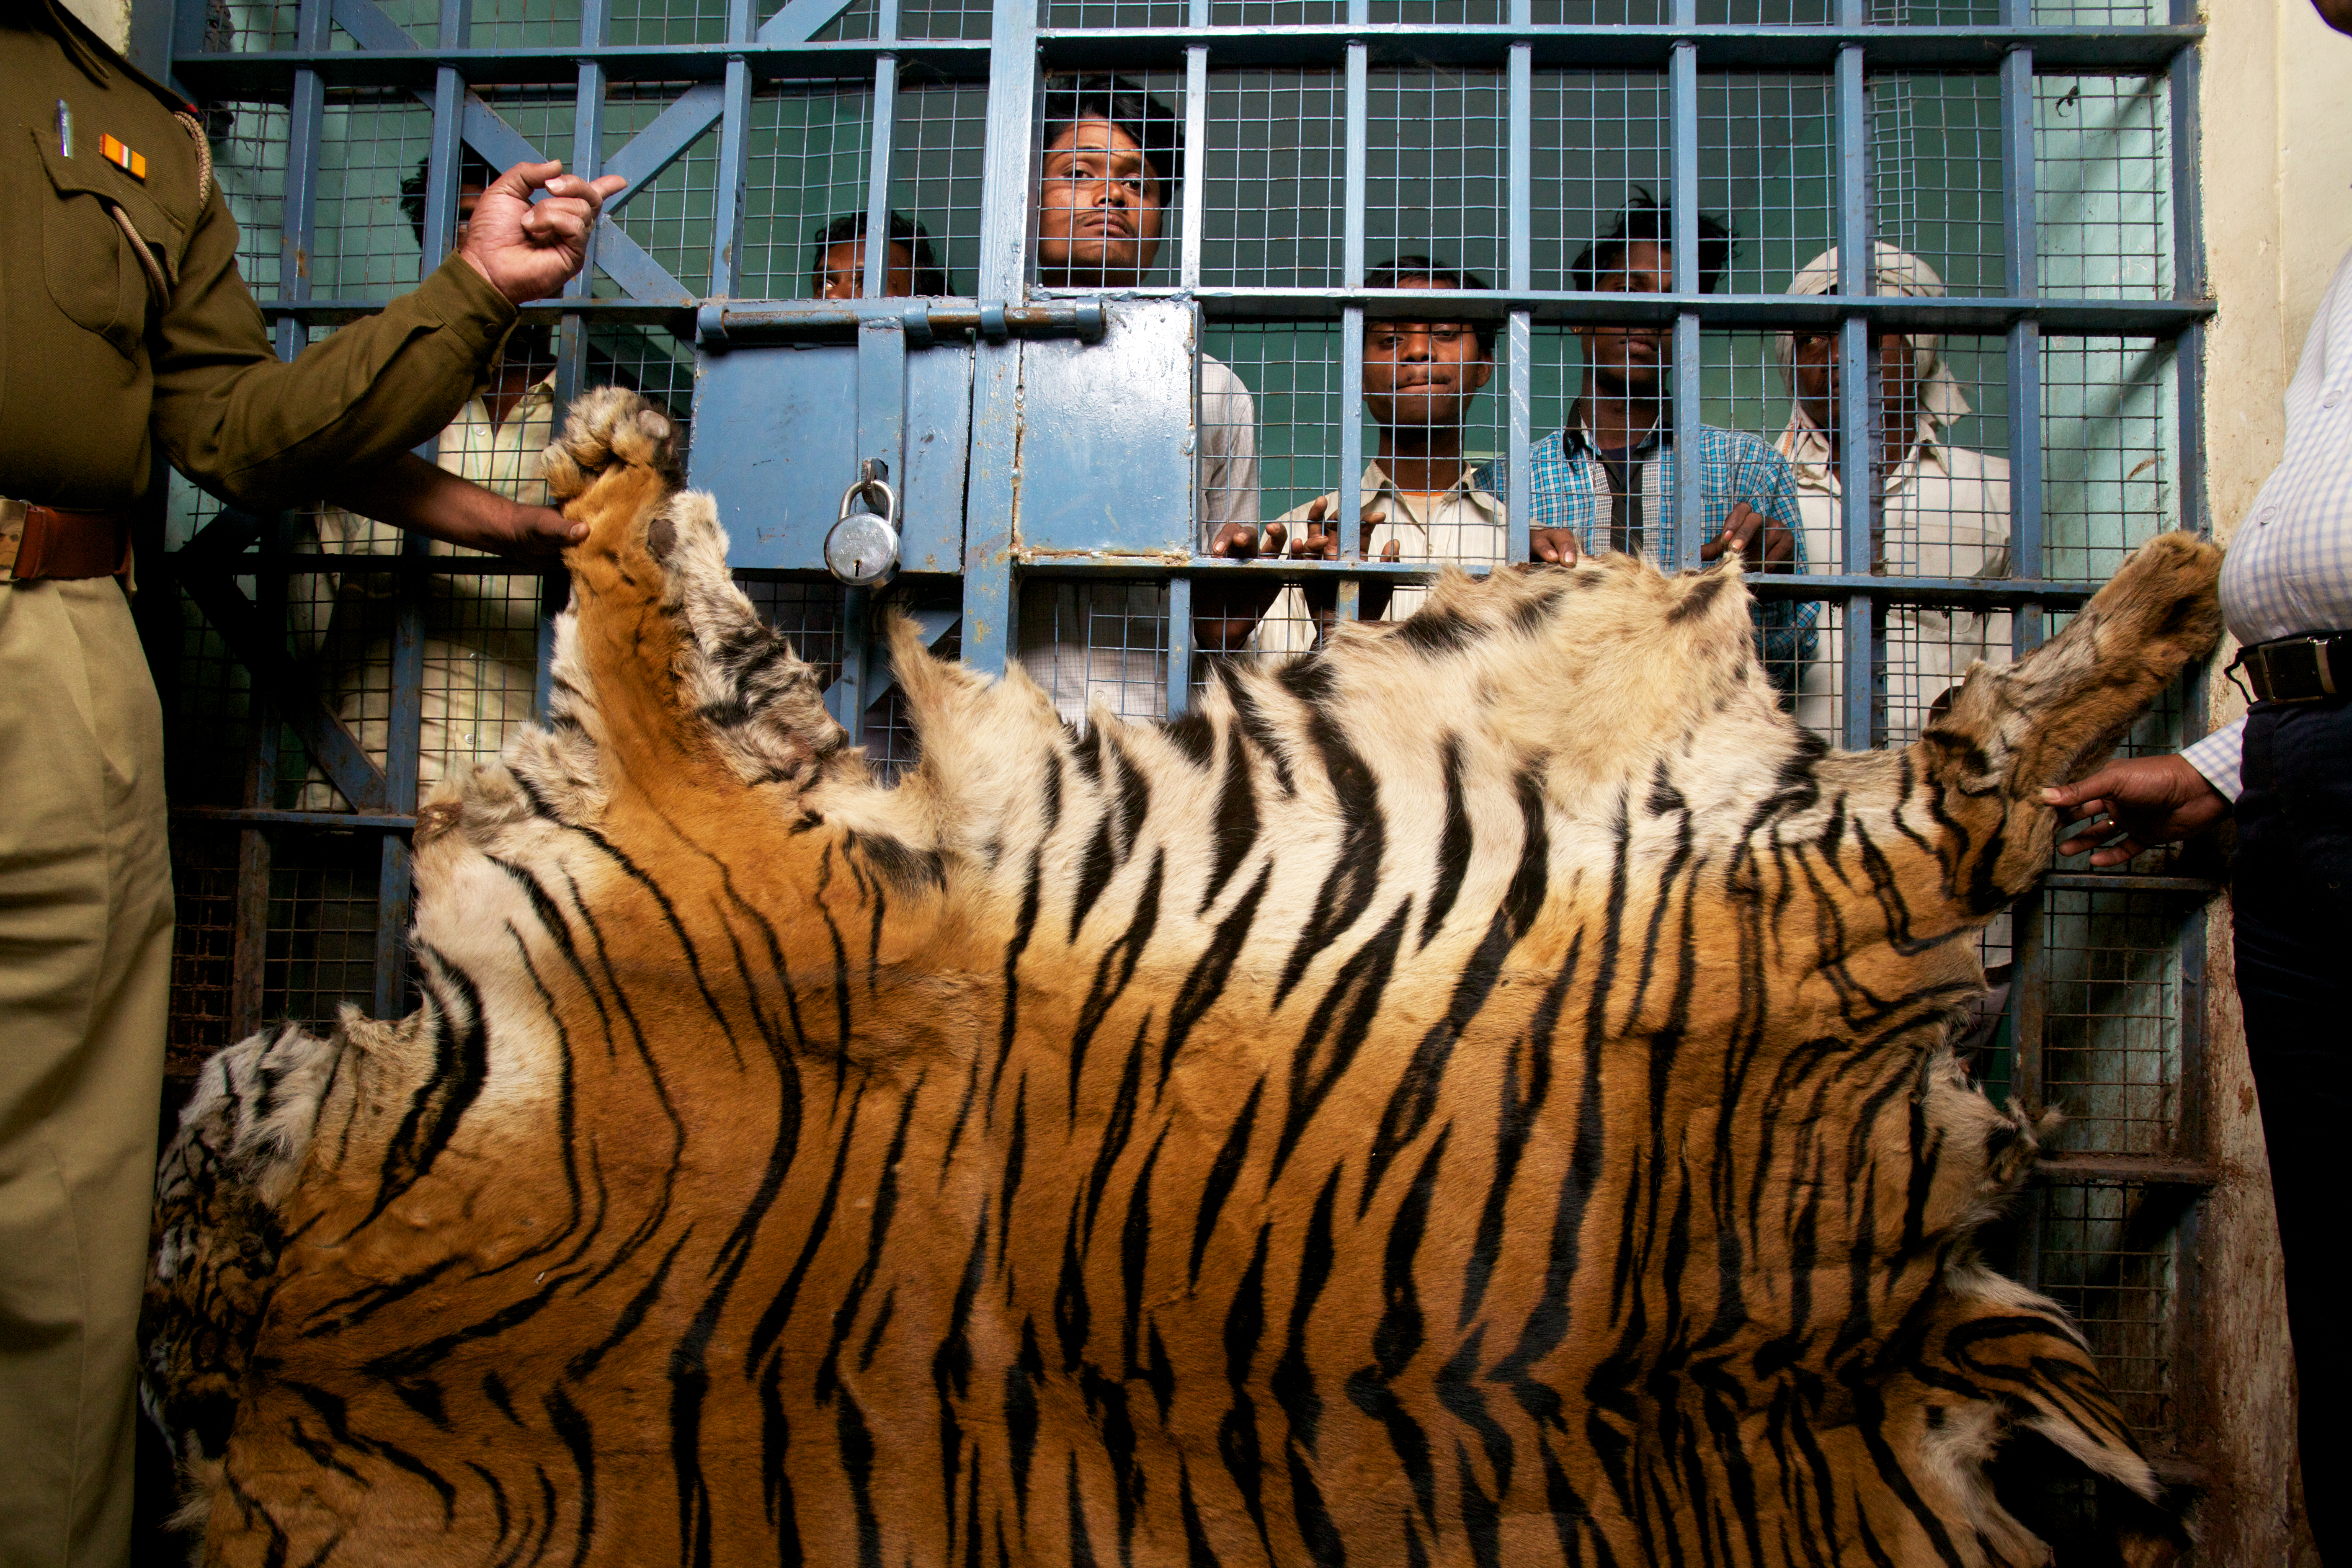 "Apprehended men captured and in jail for selling tiger skin"